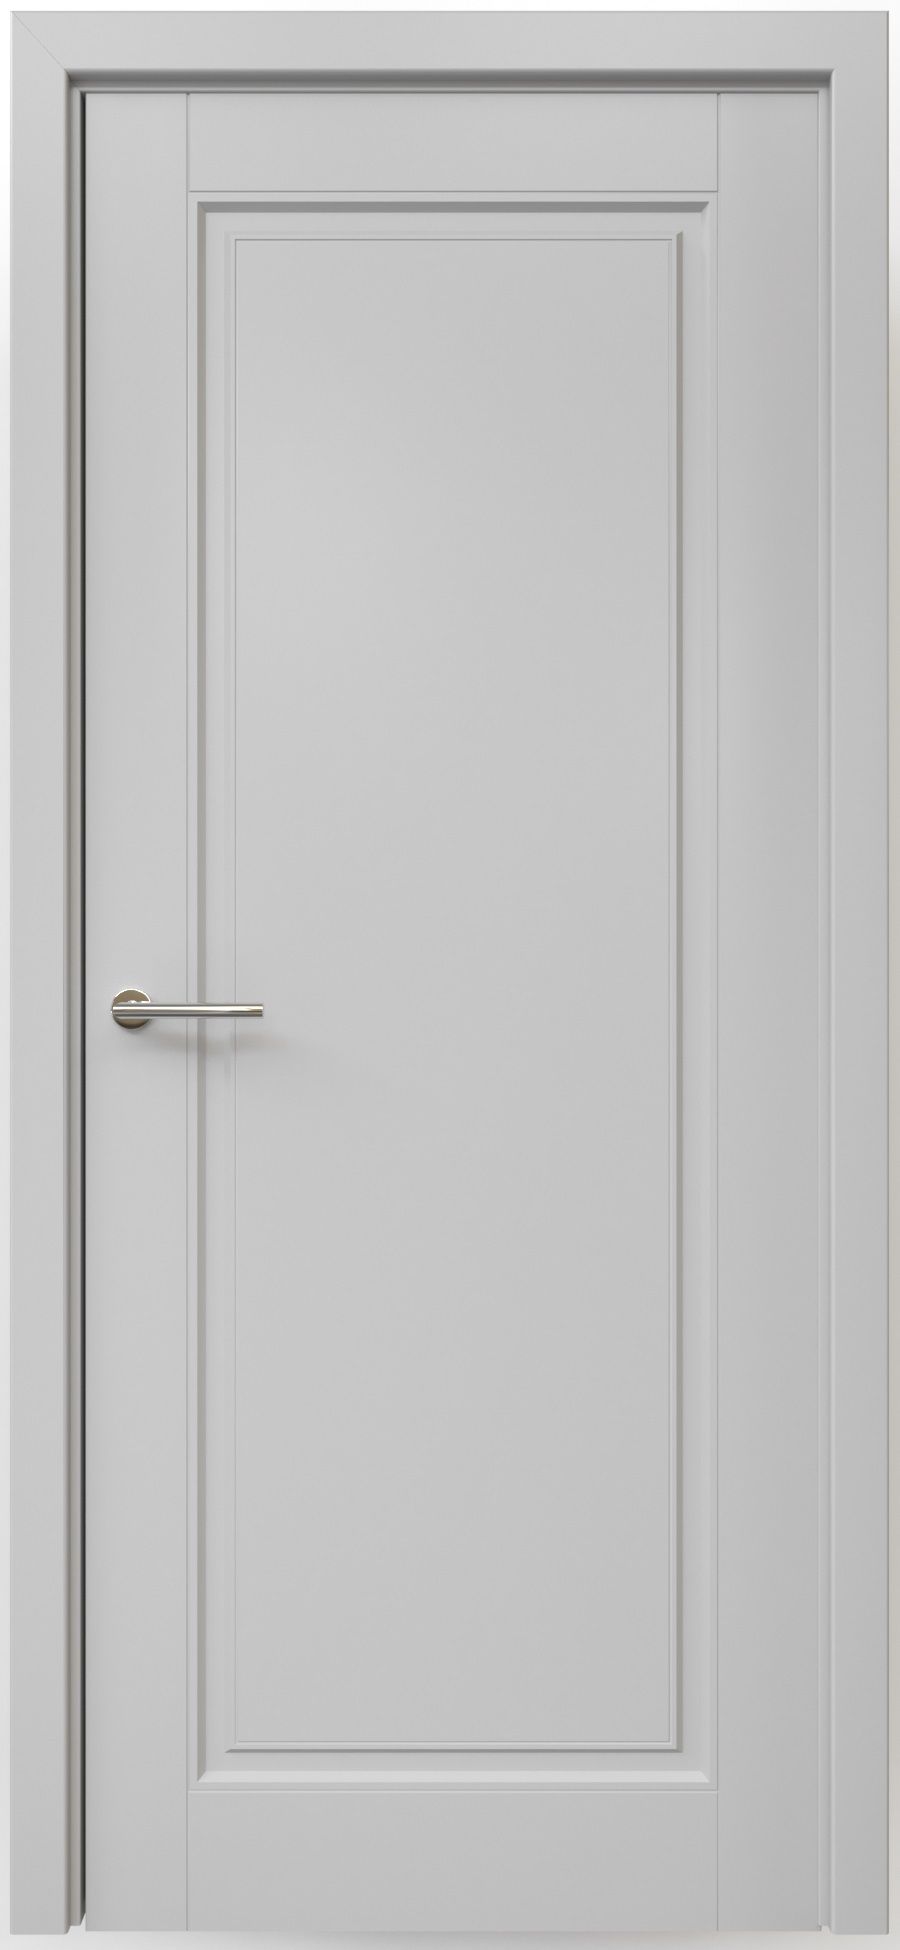 Полотно дверное глухое СХЕМА Эмаль-1 ПГ Эмаль Классика-1 800 серый (защелка маг.)